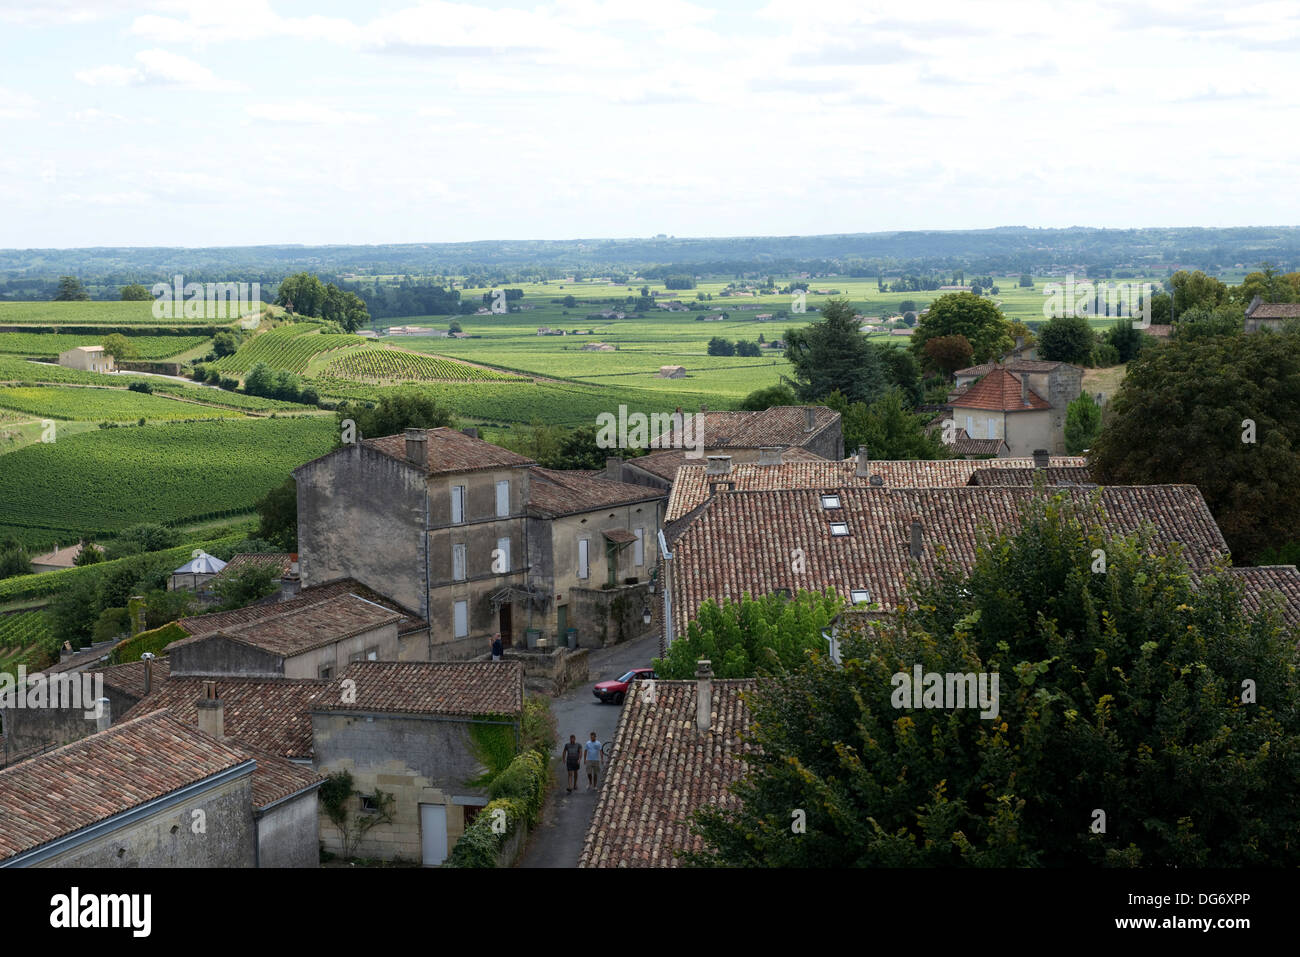 Saint Emilion e vigneti nella regione di Bordeaux in Francia famosa per i suoi vini e vigneti, un sito del Patrimonio Mondiale Foto Stock